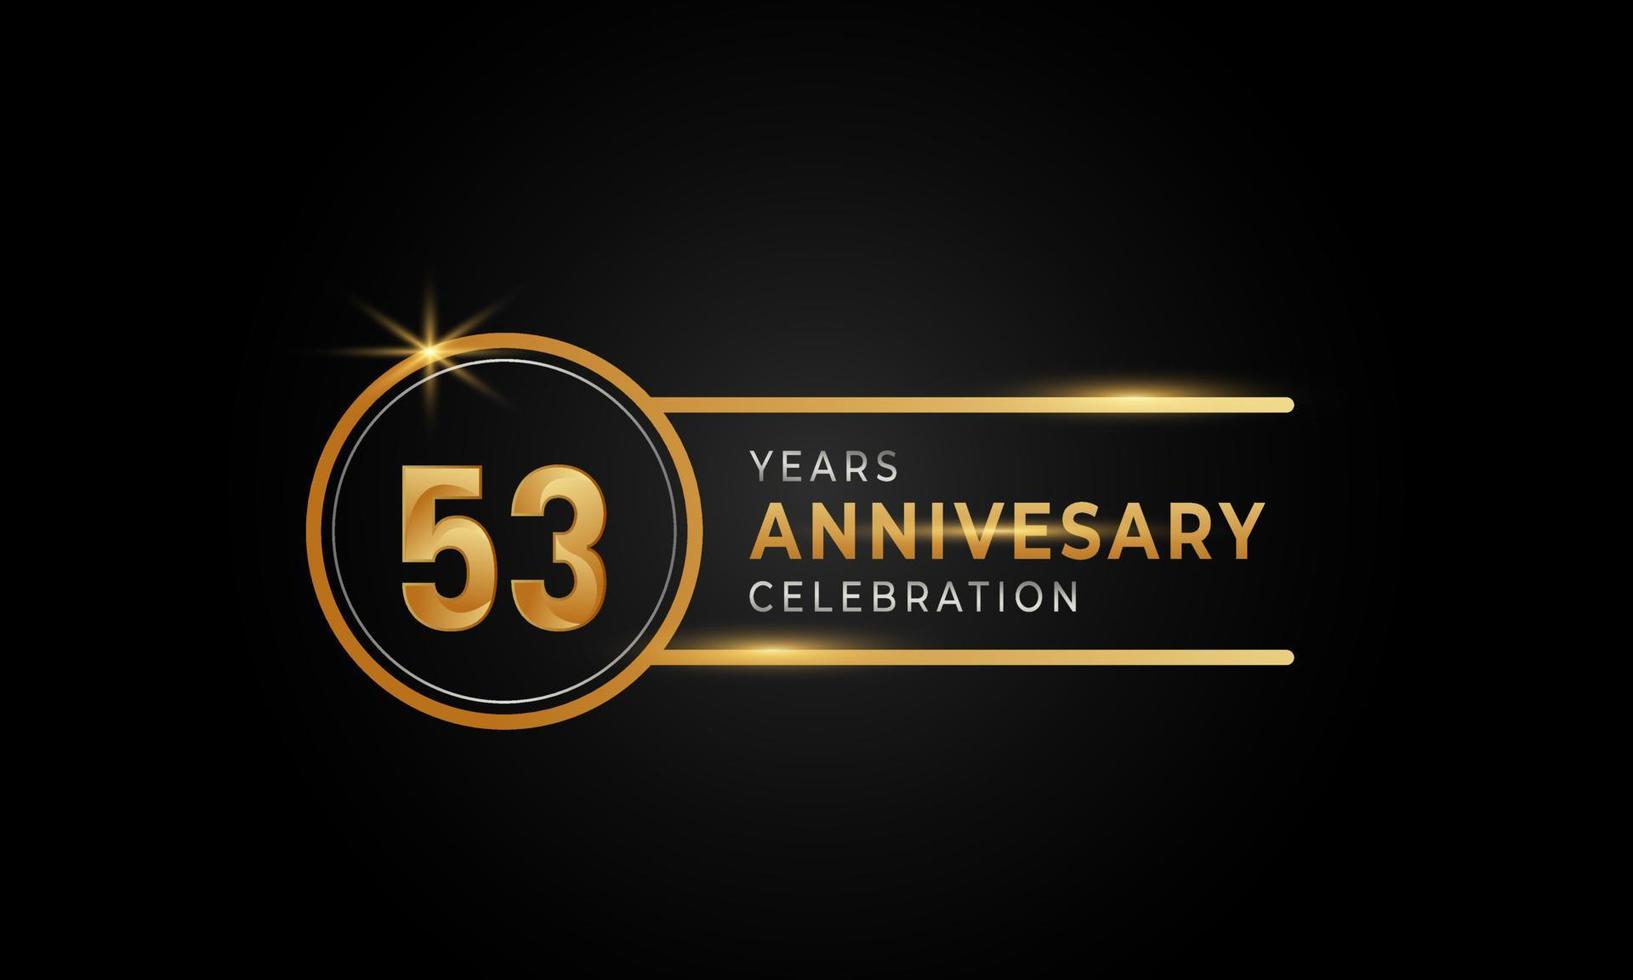 53-årsjubileumsfirande gyllene och silverfärgade med cirkelring för festevenemang, bröllop, gratulationskort och inbjudan isolerad på svart bakgrund vektor